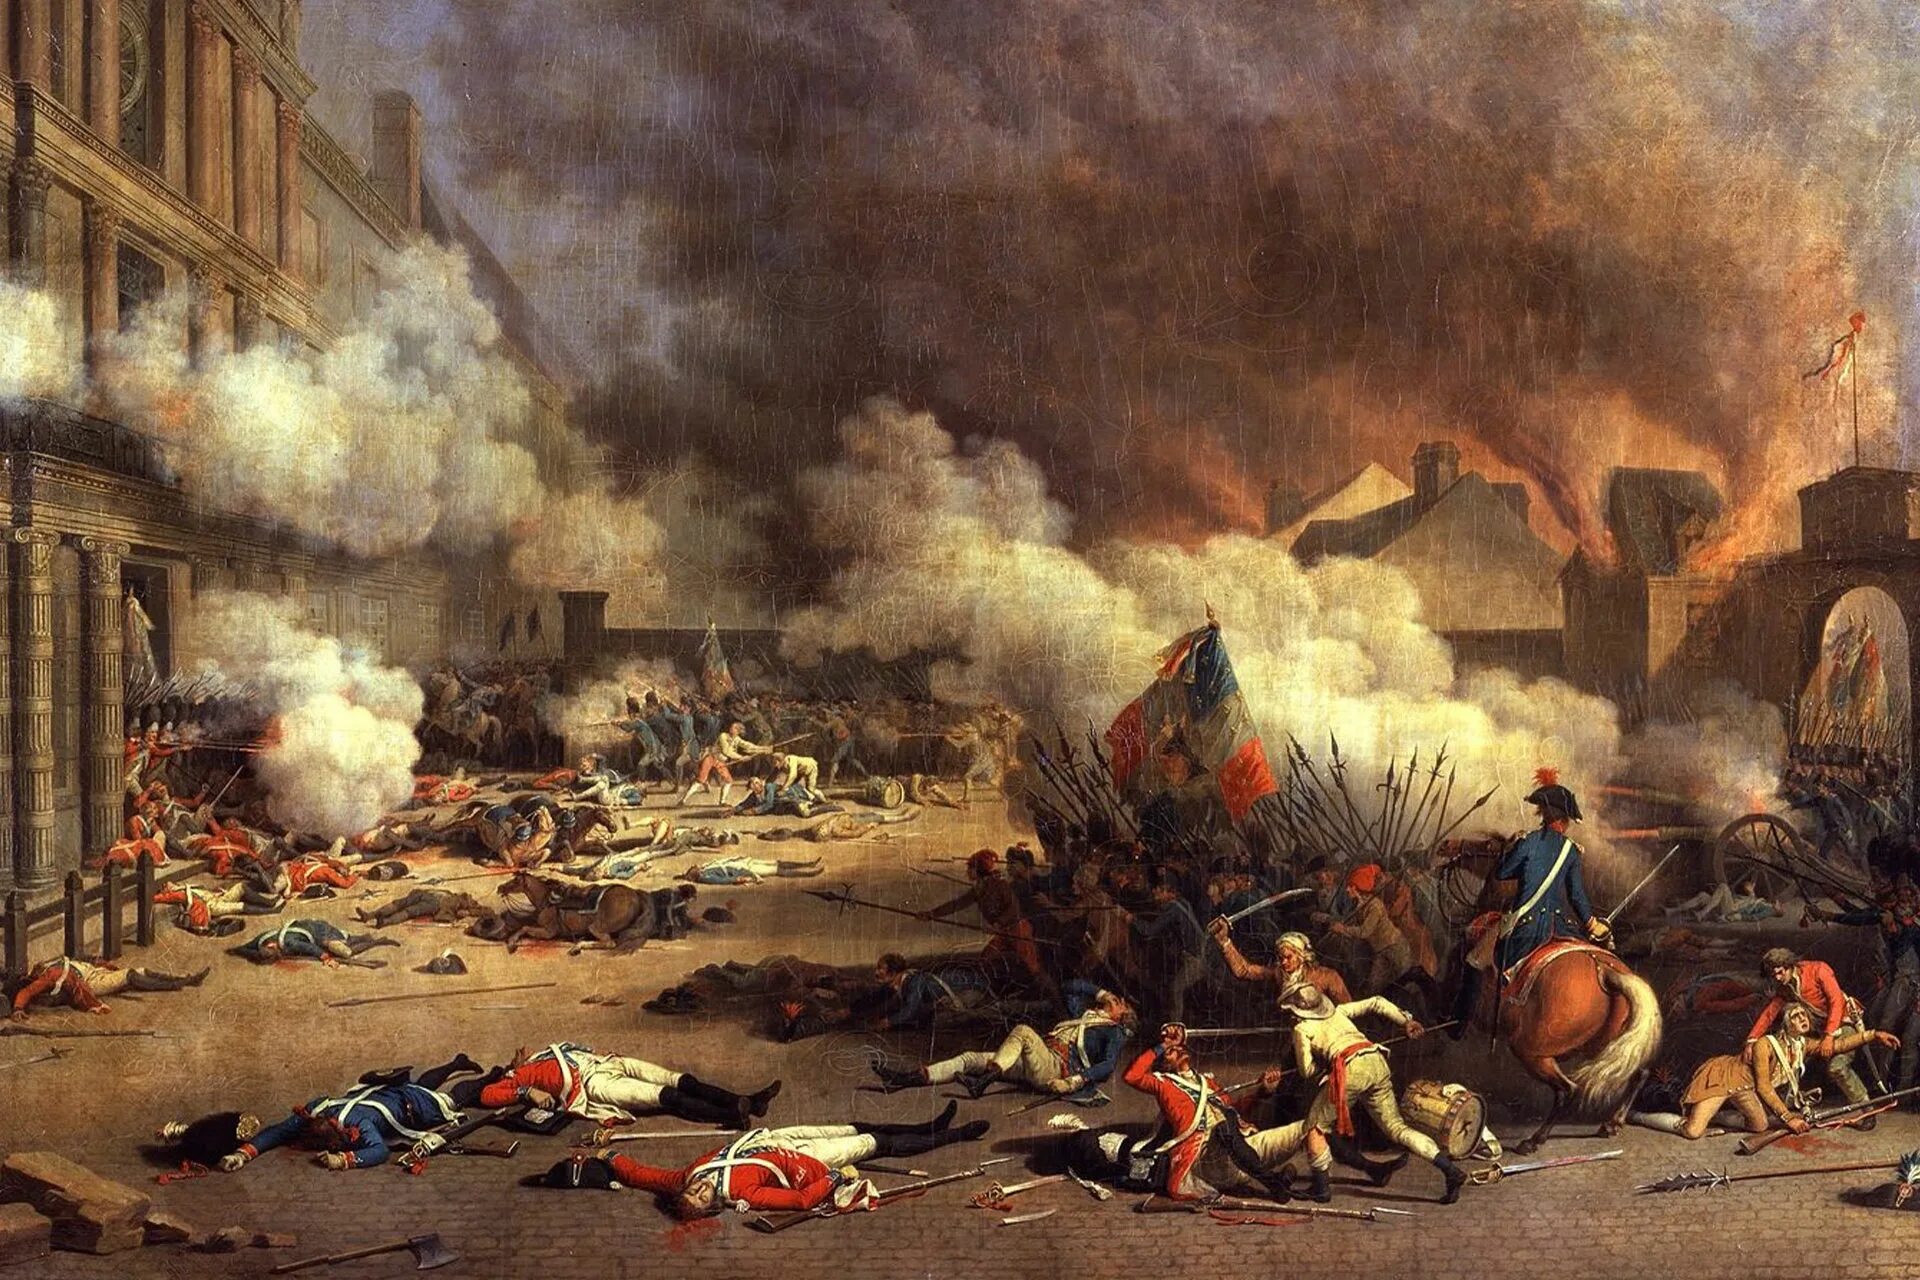 Начало революции во франции год. Штурм Тюильри 10 августа 1792 г.. Штурм дворца Тюильри 10 августа 1792 года. Взятие Тюильри 1792. Великая французская революция 1789-1799.